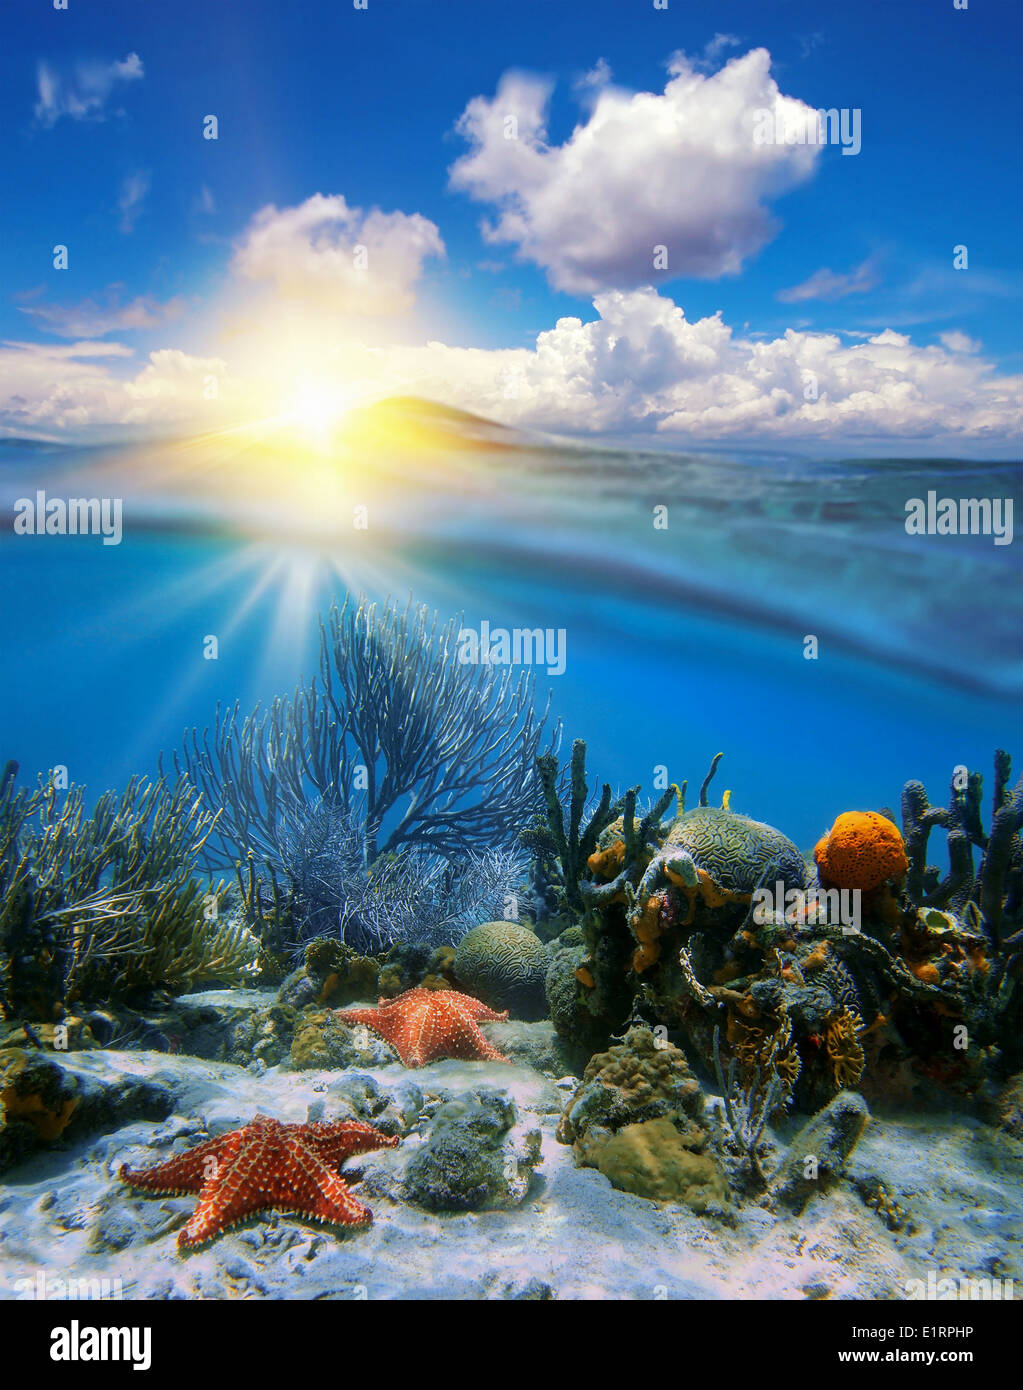 Nuvoloso blu cielo con la luce del sole e subacquea Coral reef con stelle di mare diviso dalla linea di galleggiamento in mare dei Caraibi Foto Stock